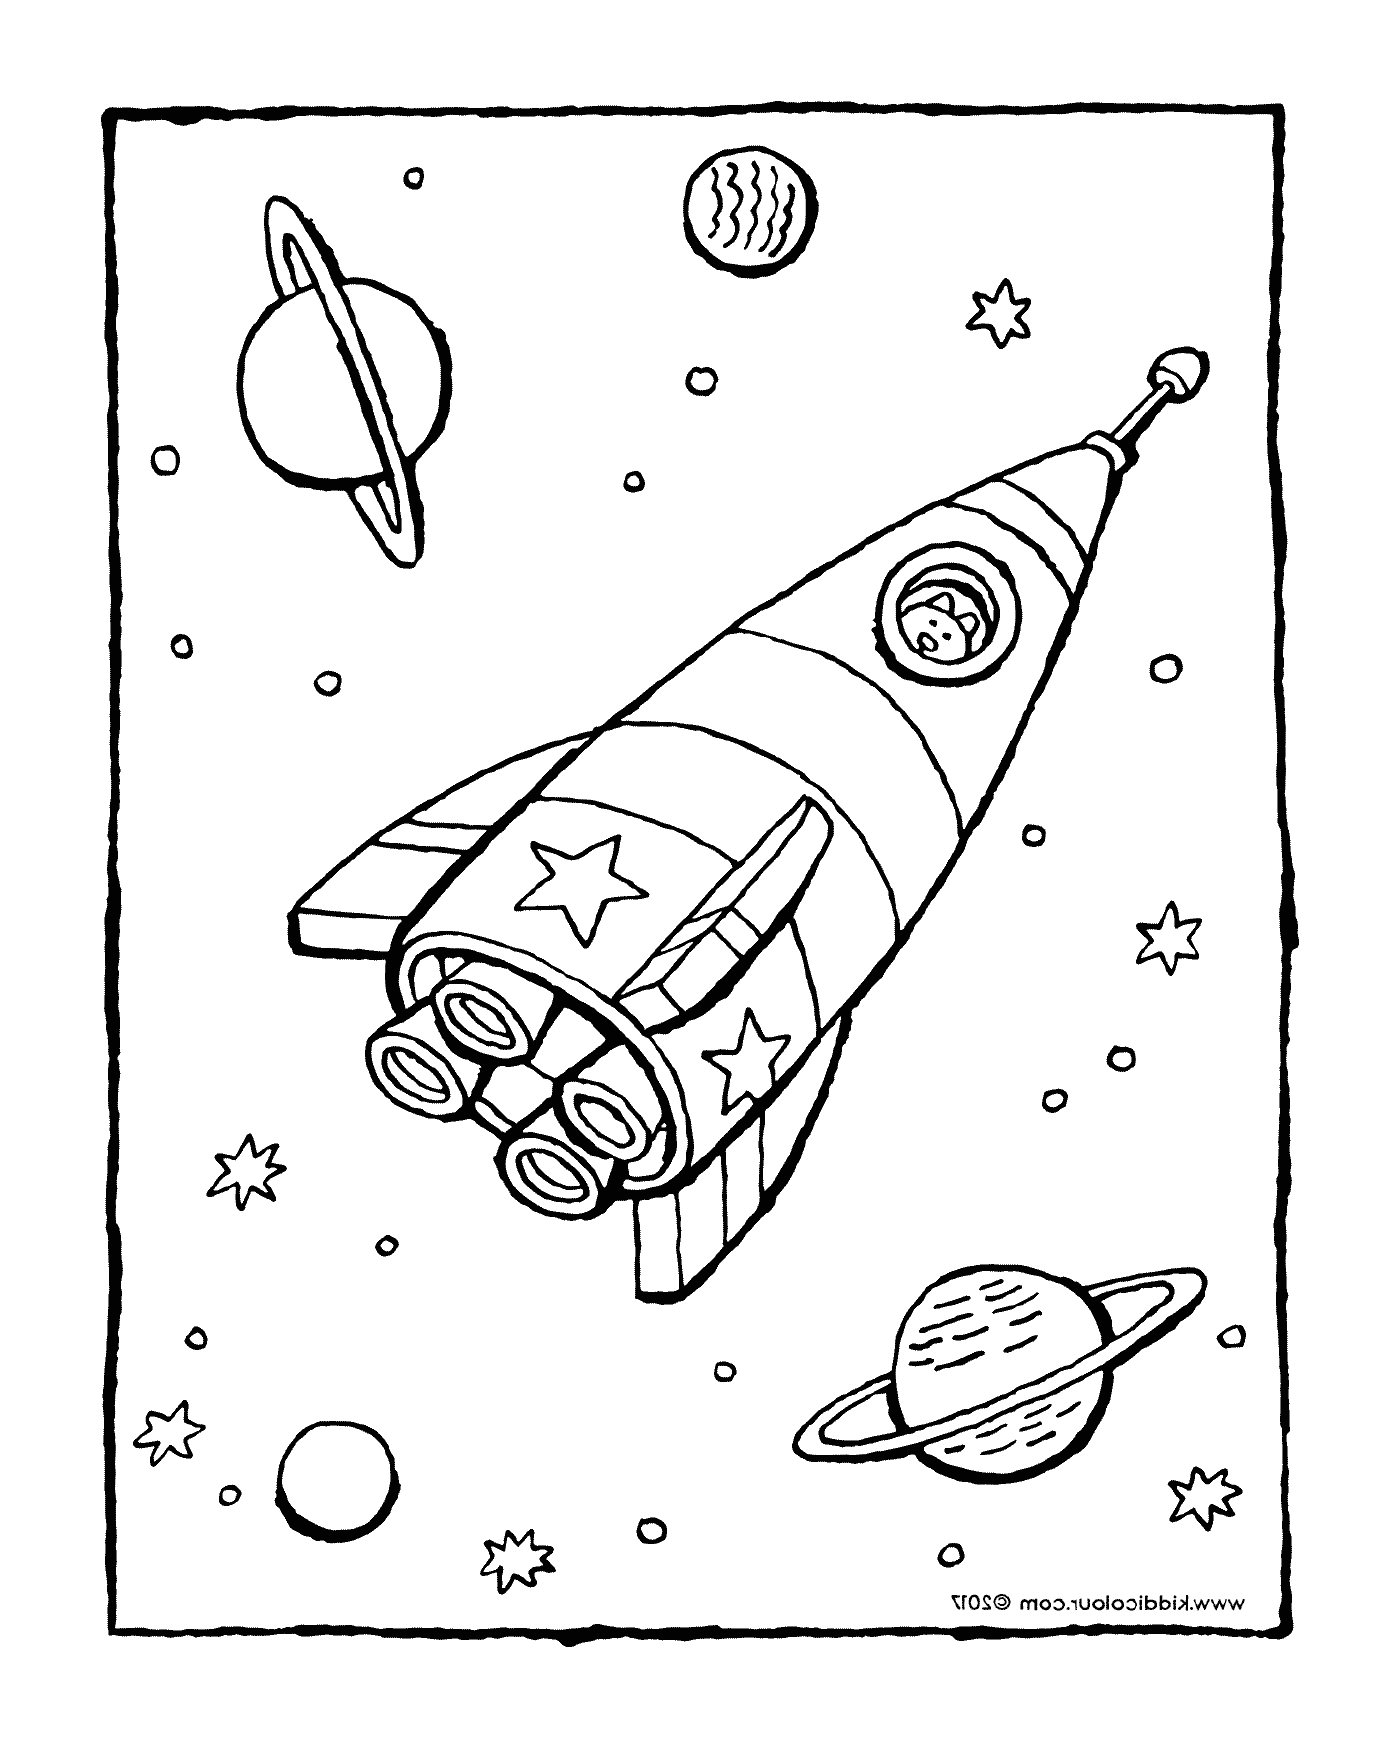  Descolagem de um foguete no espaço 